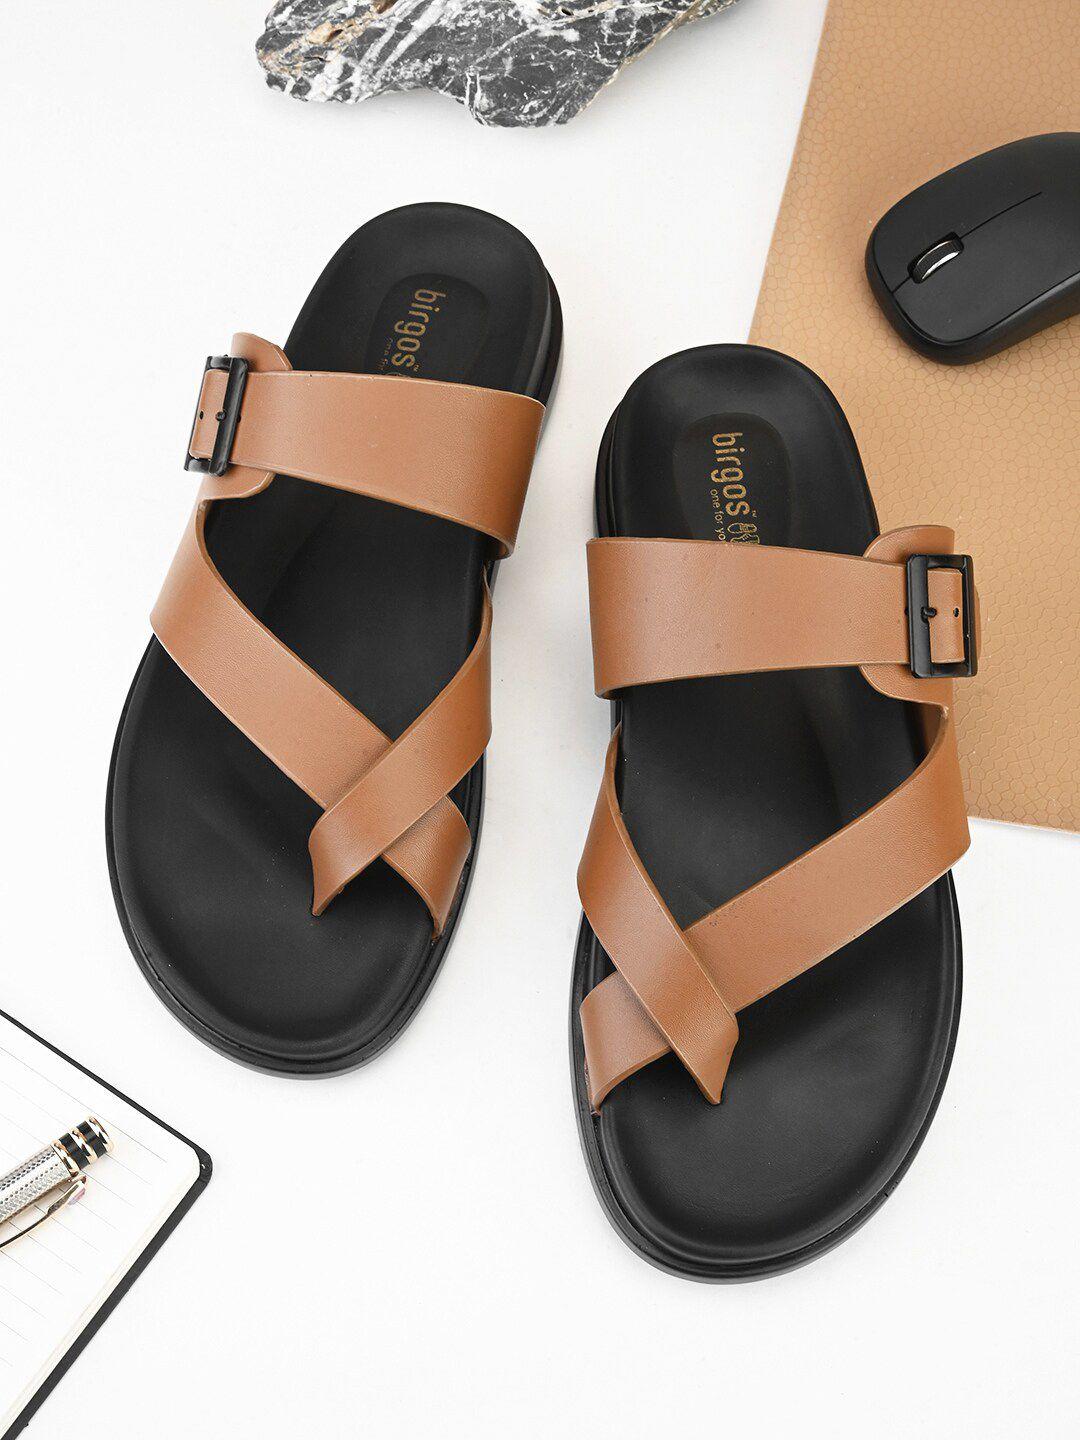 birgos-men-one-toe-comfort-sandals-with-buckle-detail